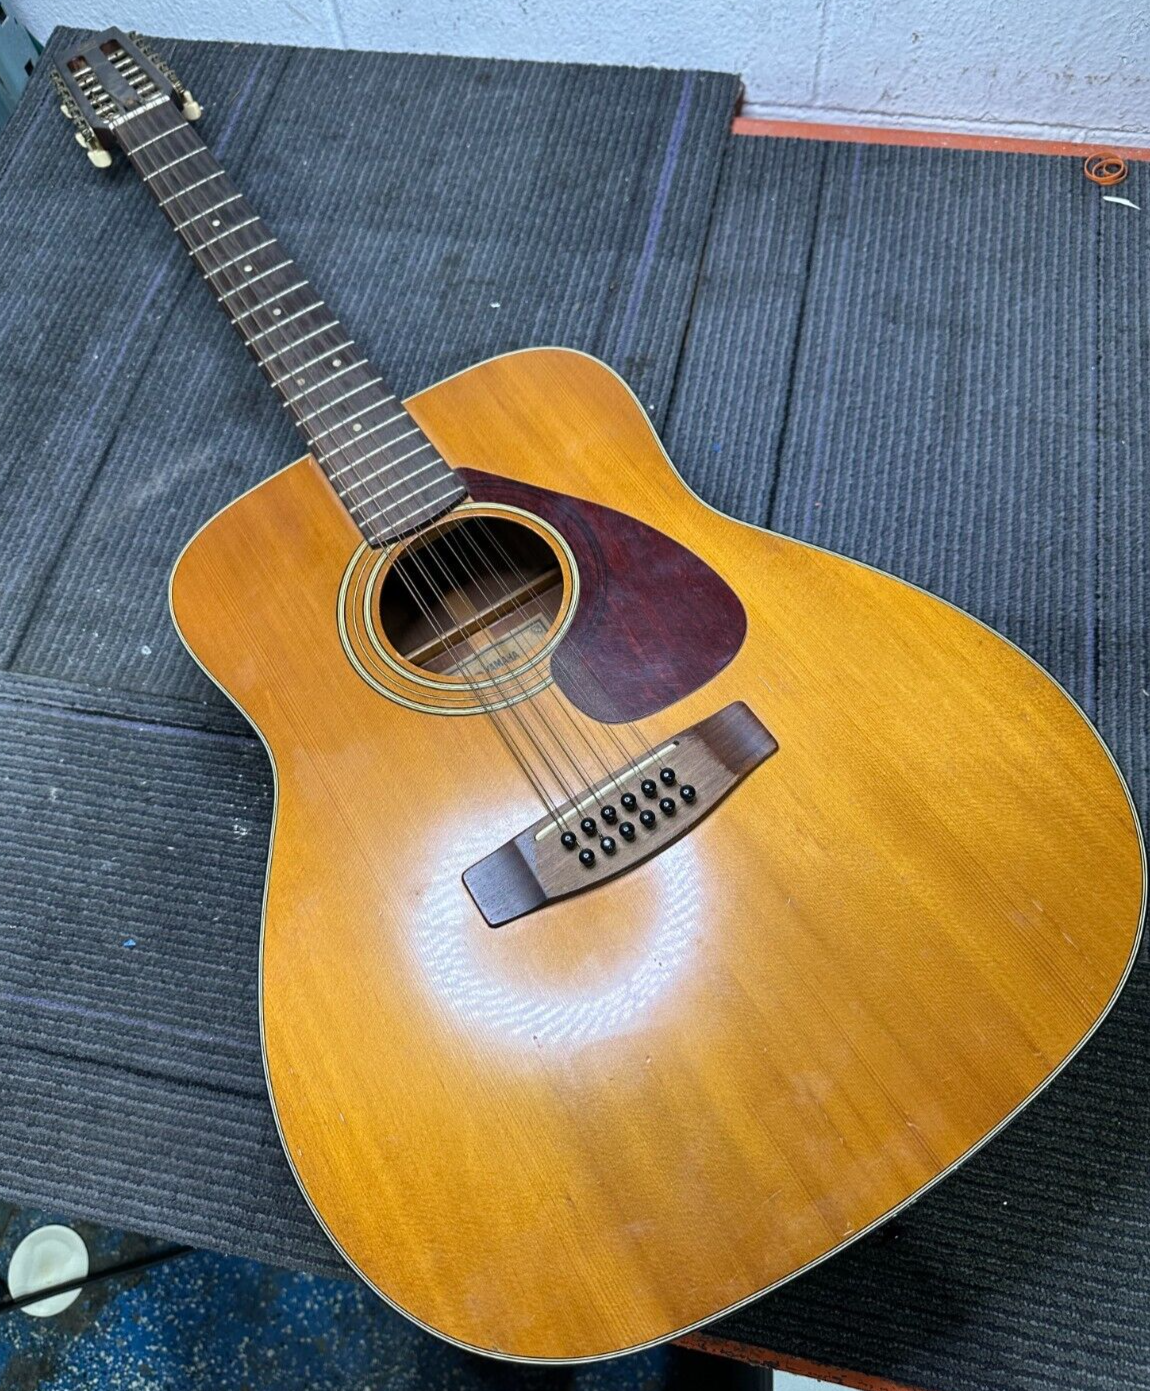 Yamaha FG260 12 String Acoustic Guitar *(LOCAL PICKUP)* 1